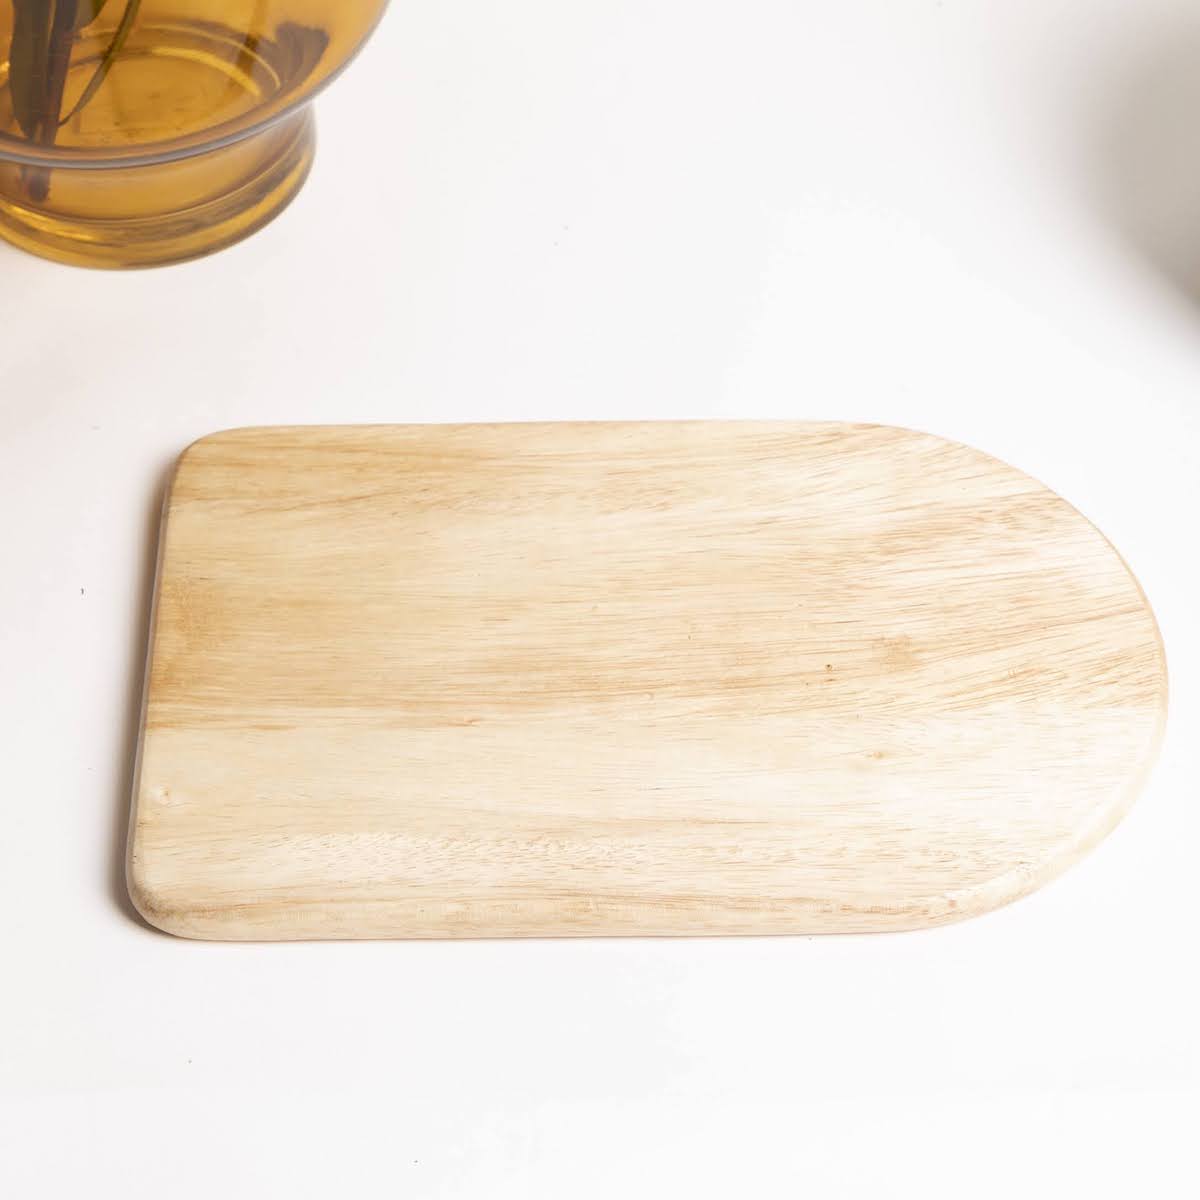 Suar Wood Cheese Cutting Board - P I C N I C 